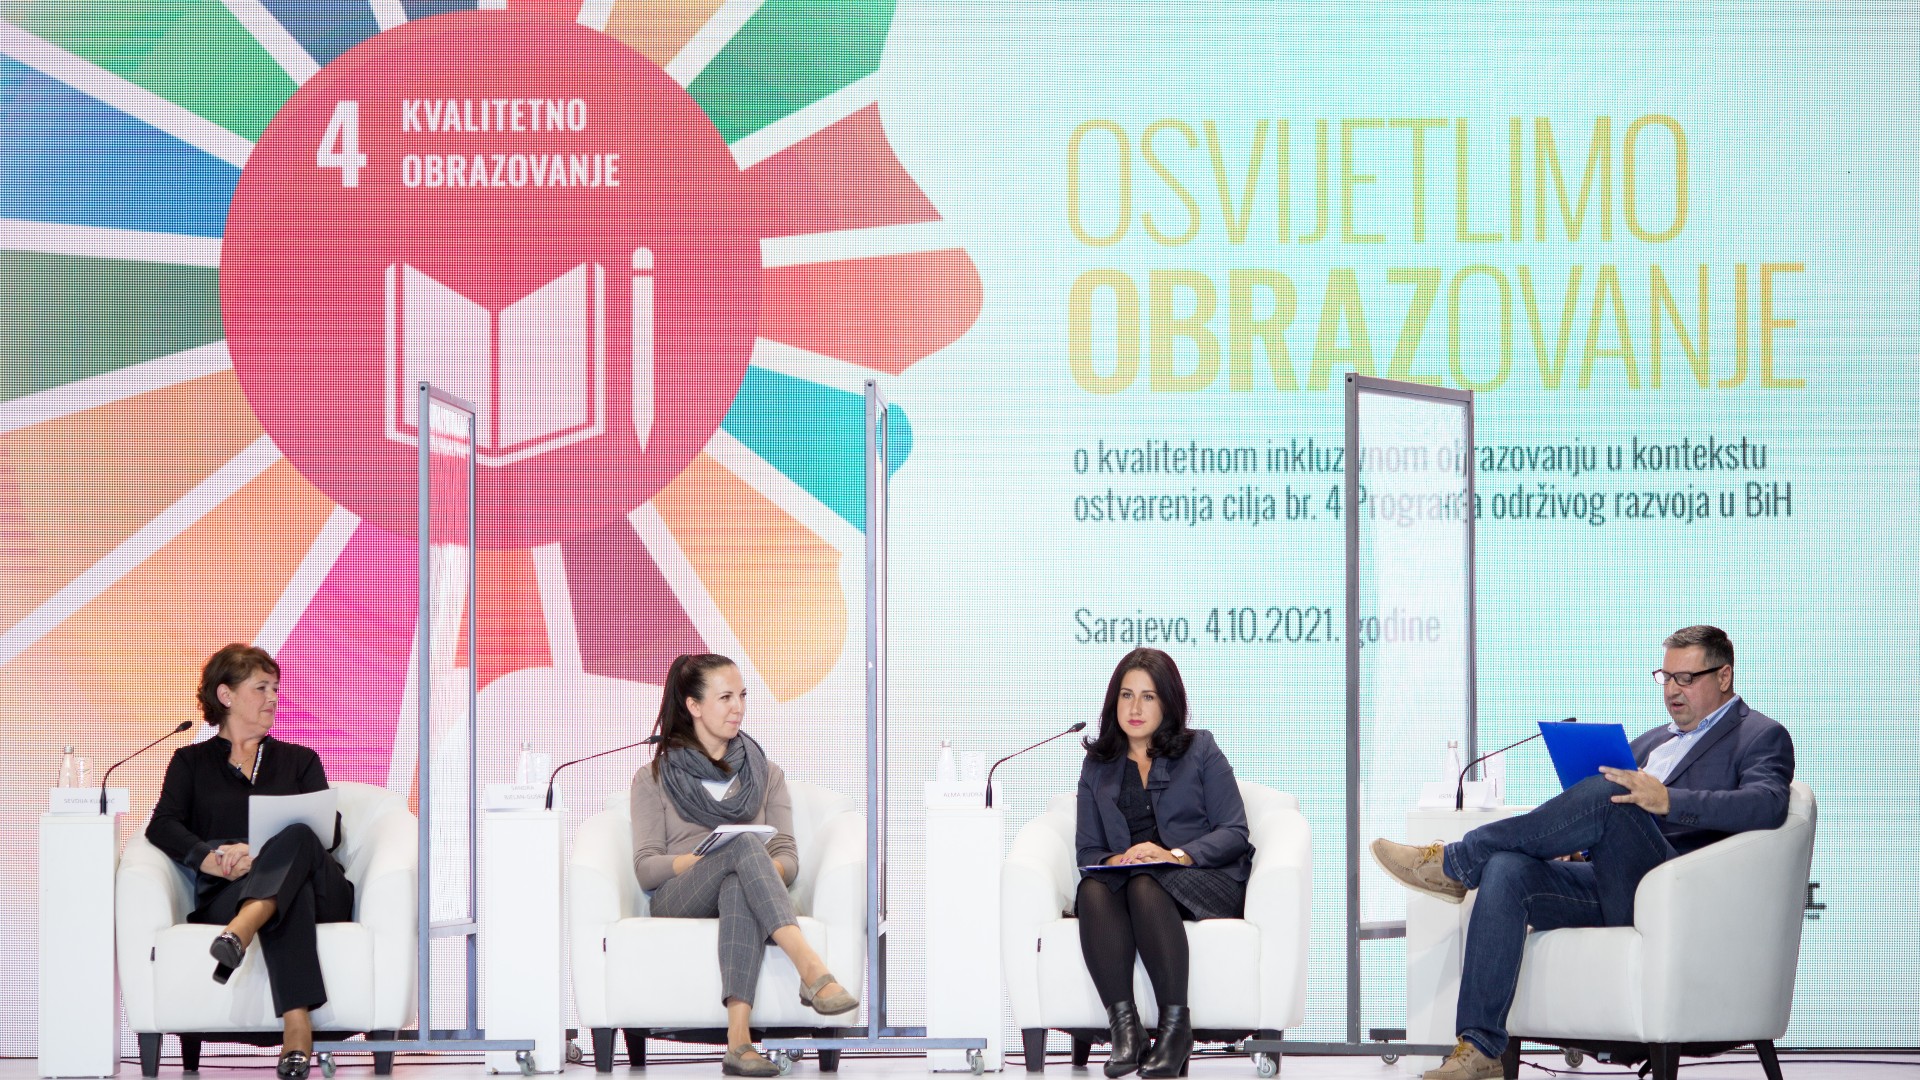 Završena konferencija o kvalitetnom inkluzivnom obrazovanju „Osvijetlimo OBRAZovanje":  Gdje je Bosna i Hercegovina na putu ka ostvarenju cilja 4 Programa održivog razvoja?